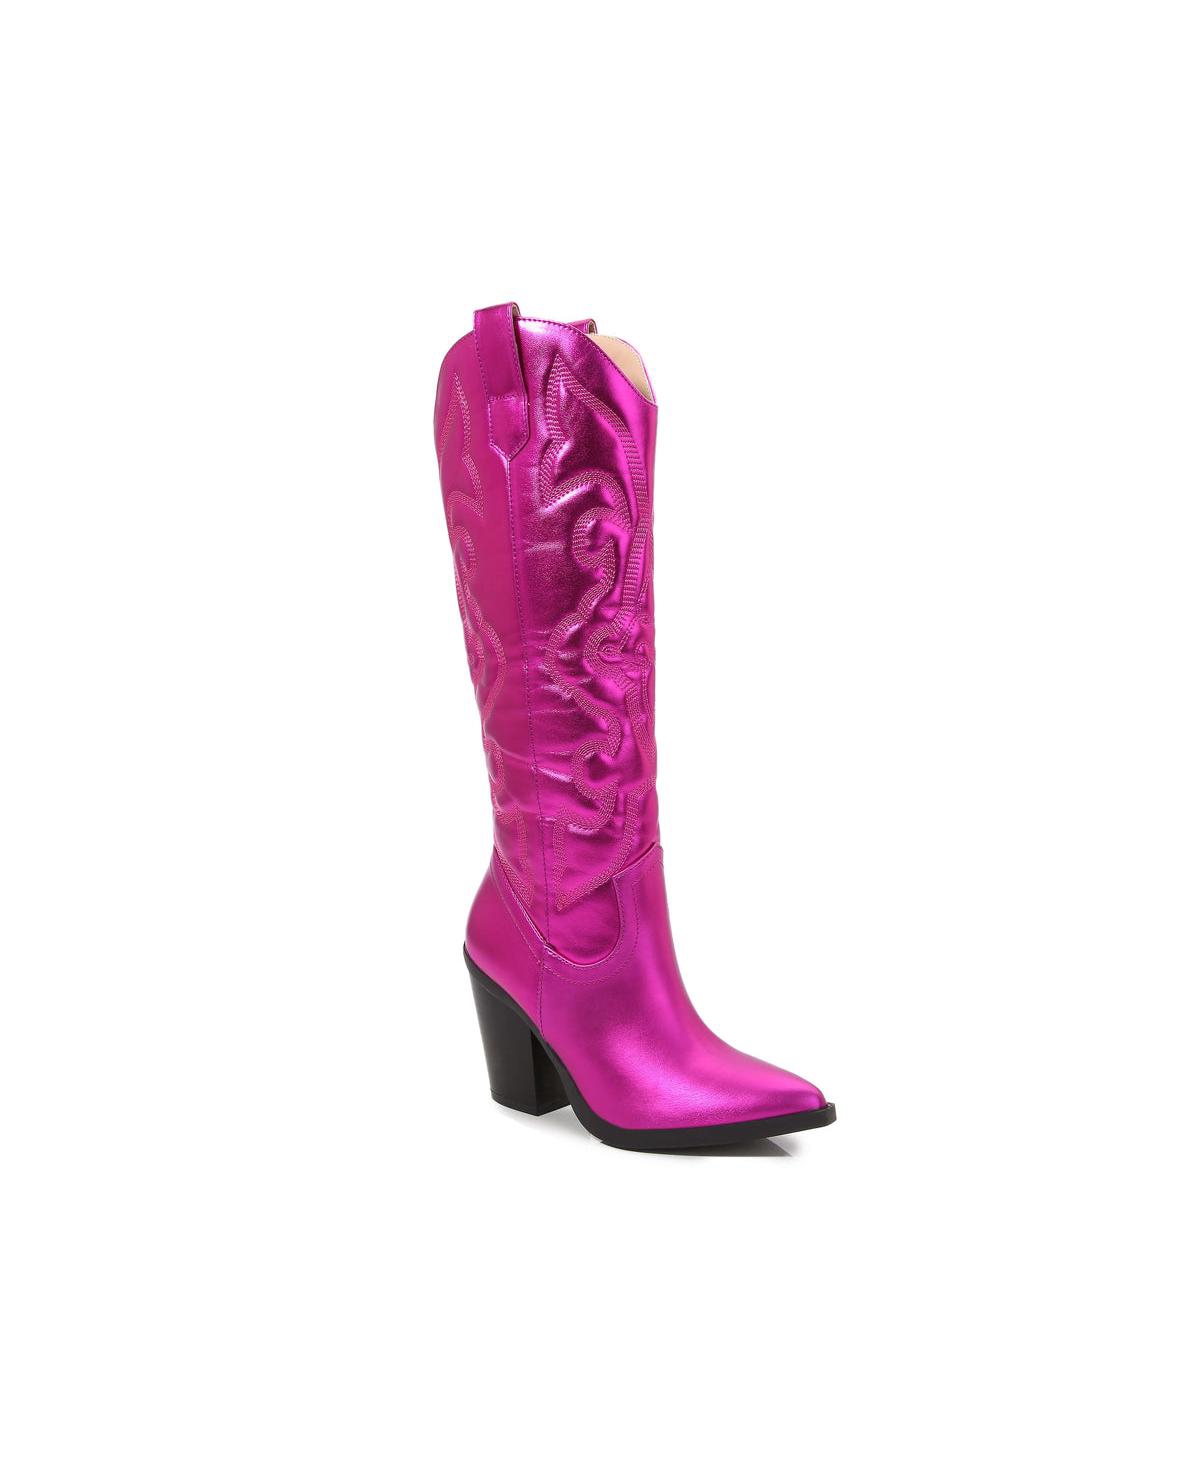 Women's Arizona Boot - Hot pink